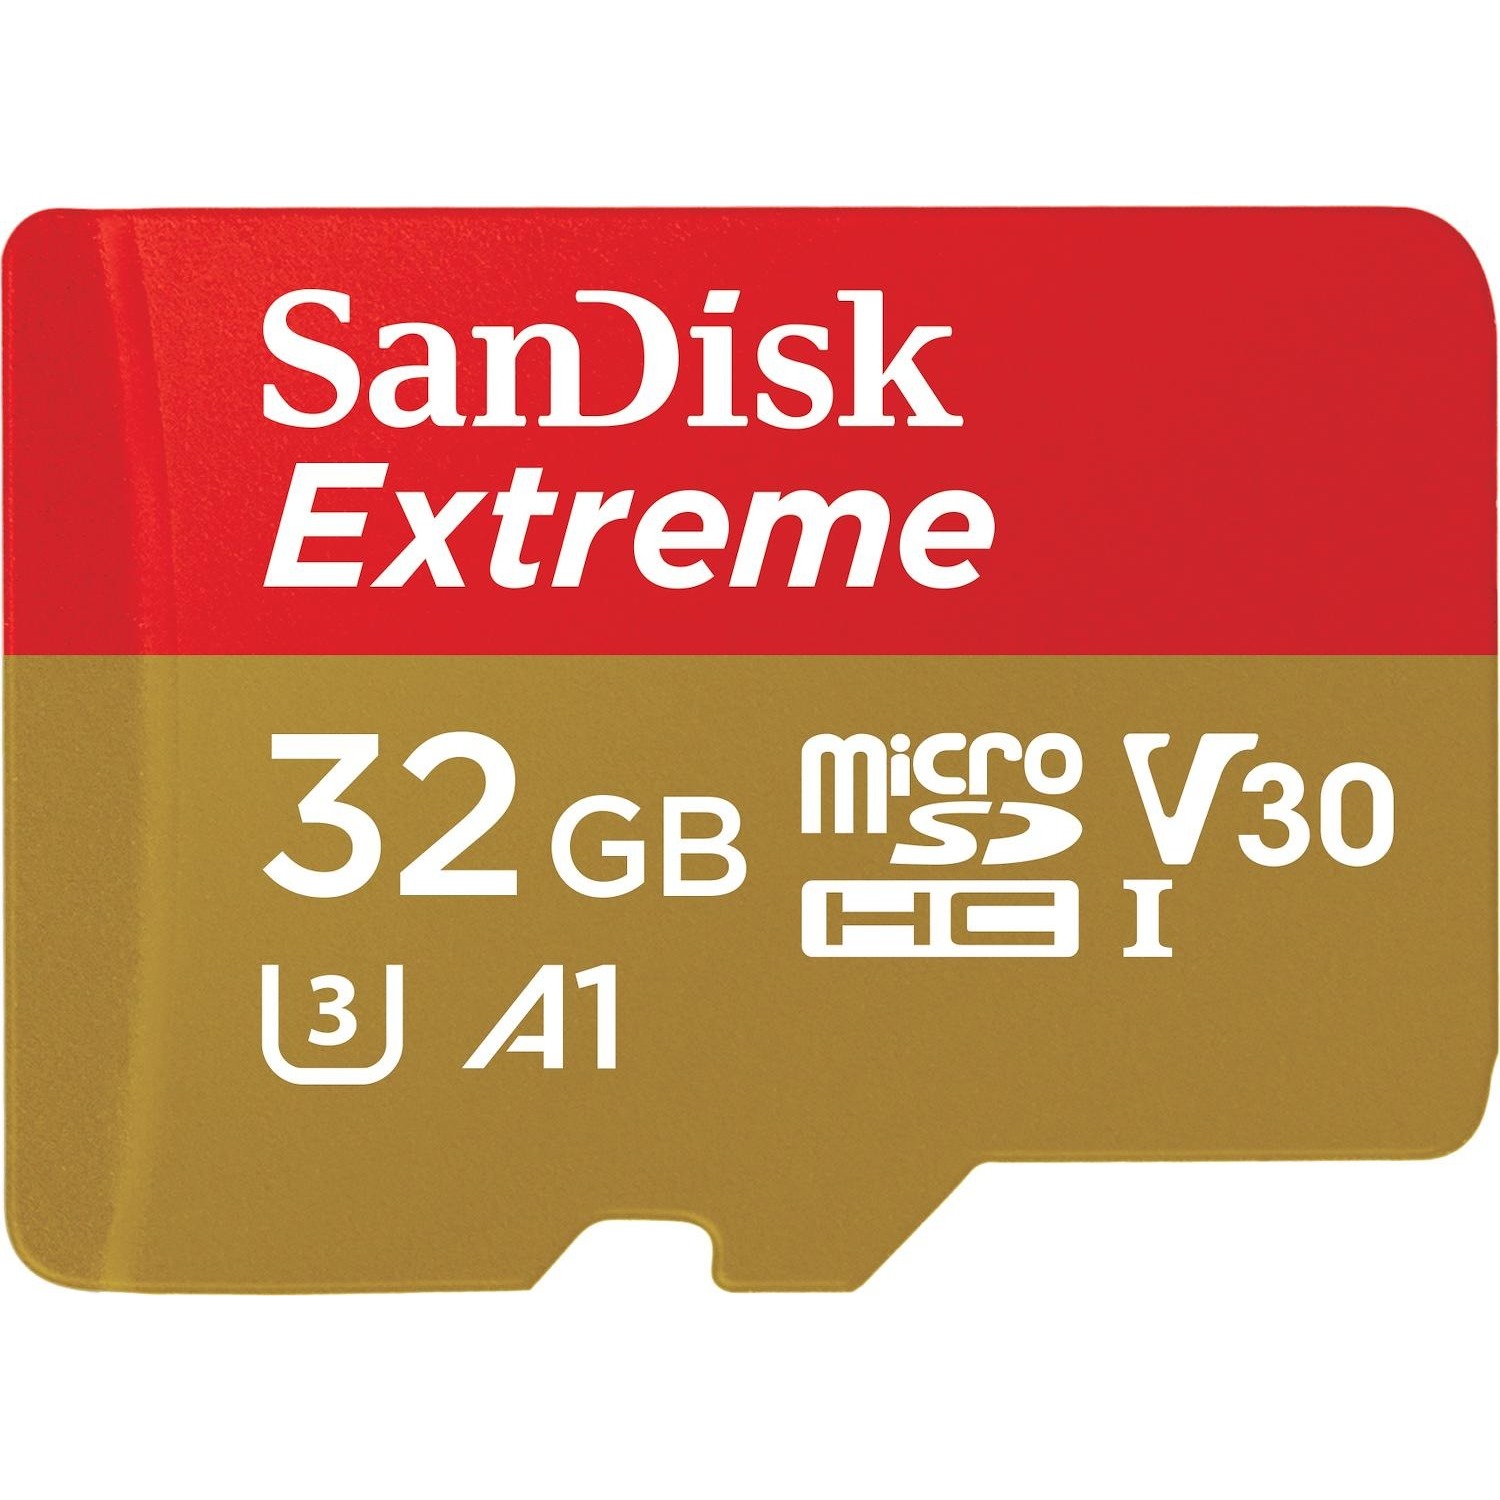 Immagine per MicroSD Extreme mobile 32GB con adattatore SD da DIMOStore